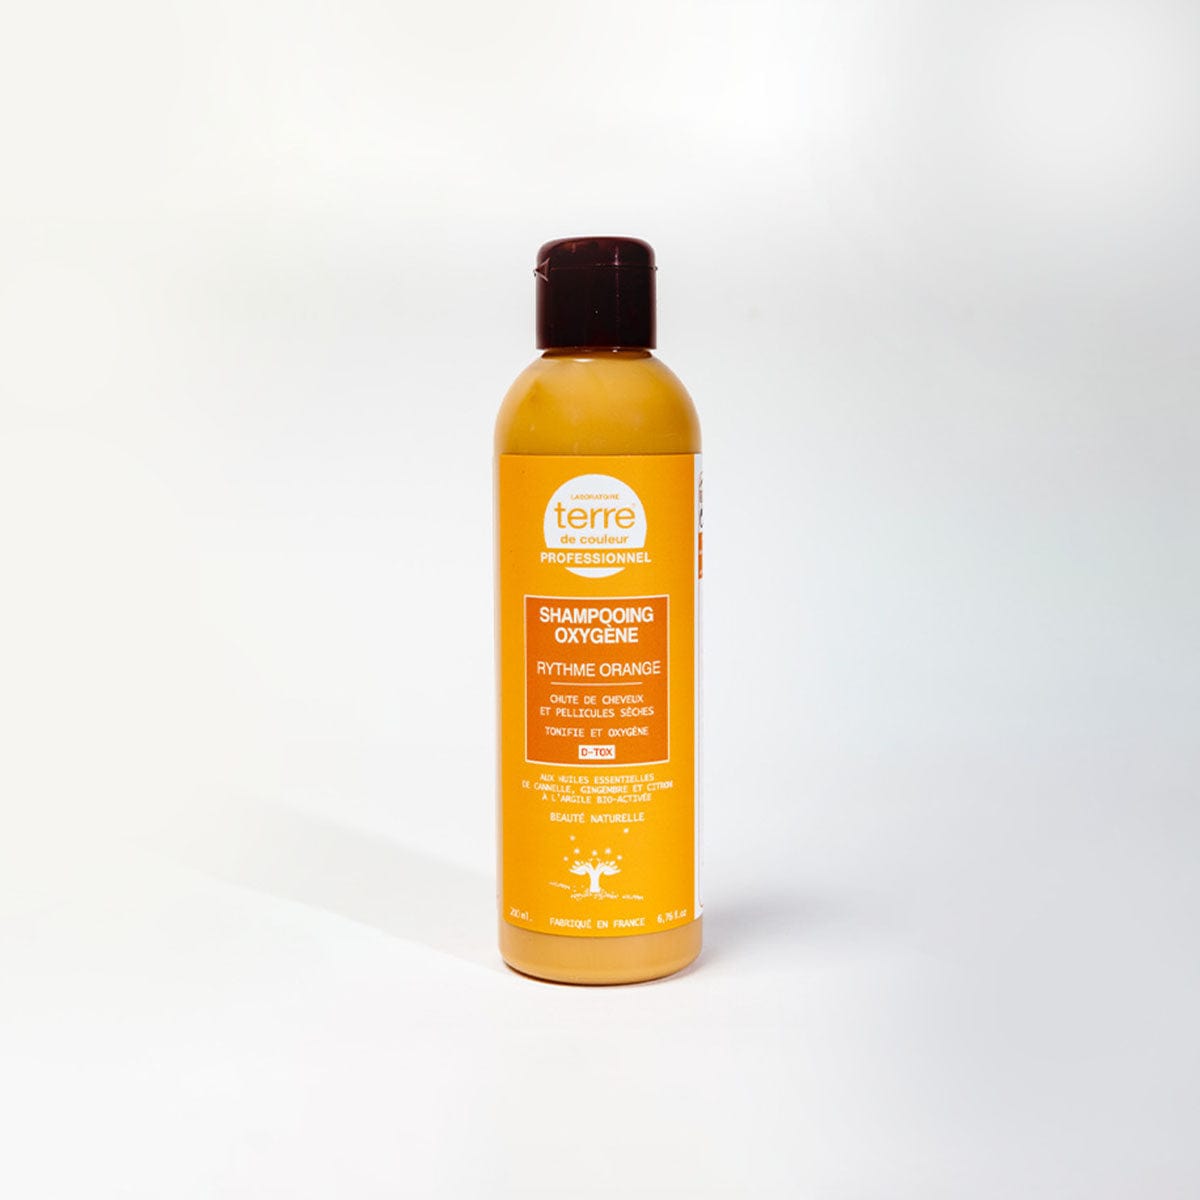 Shampooing Oxygénant Rythme Orange - Salon Coralie Aumaitre